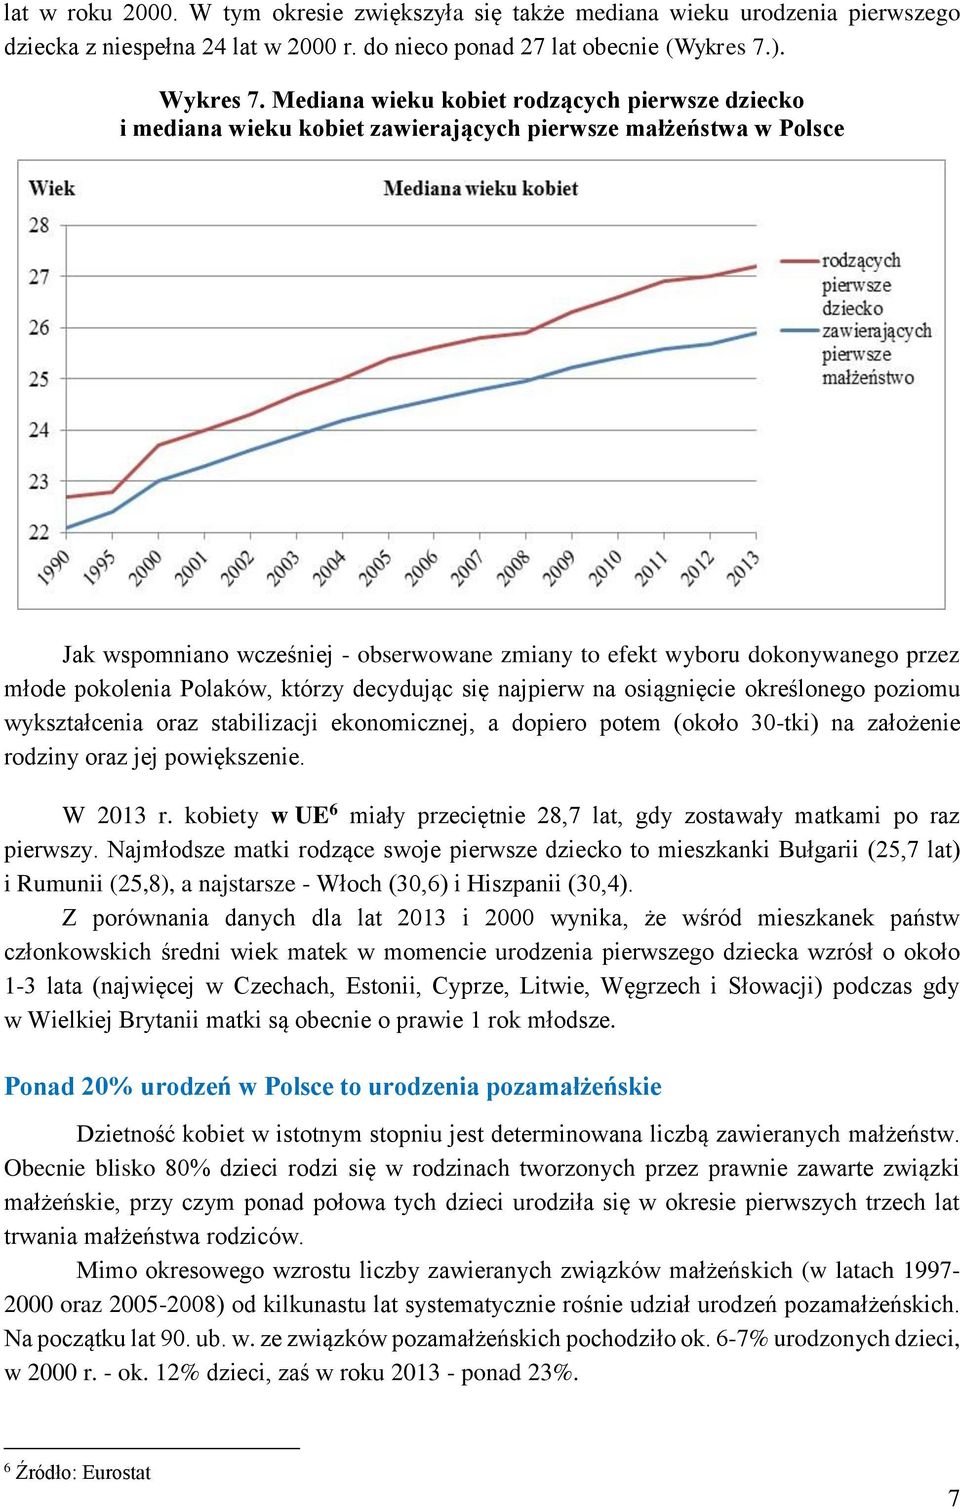 młode pokolenia Polaków, którzy decydując się najpierw na osiągnięcie określonego poziomu wykształcenia oraz stabilizacji ekonomicznej, a dopiero potem (około 30-tki) na założenie rodziny oraz jej